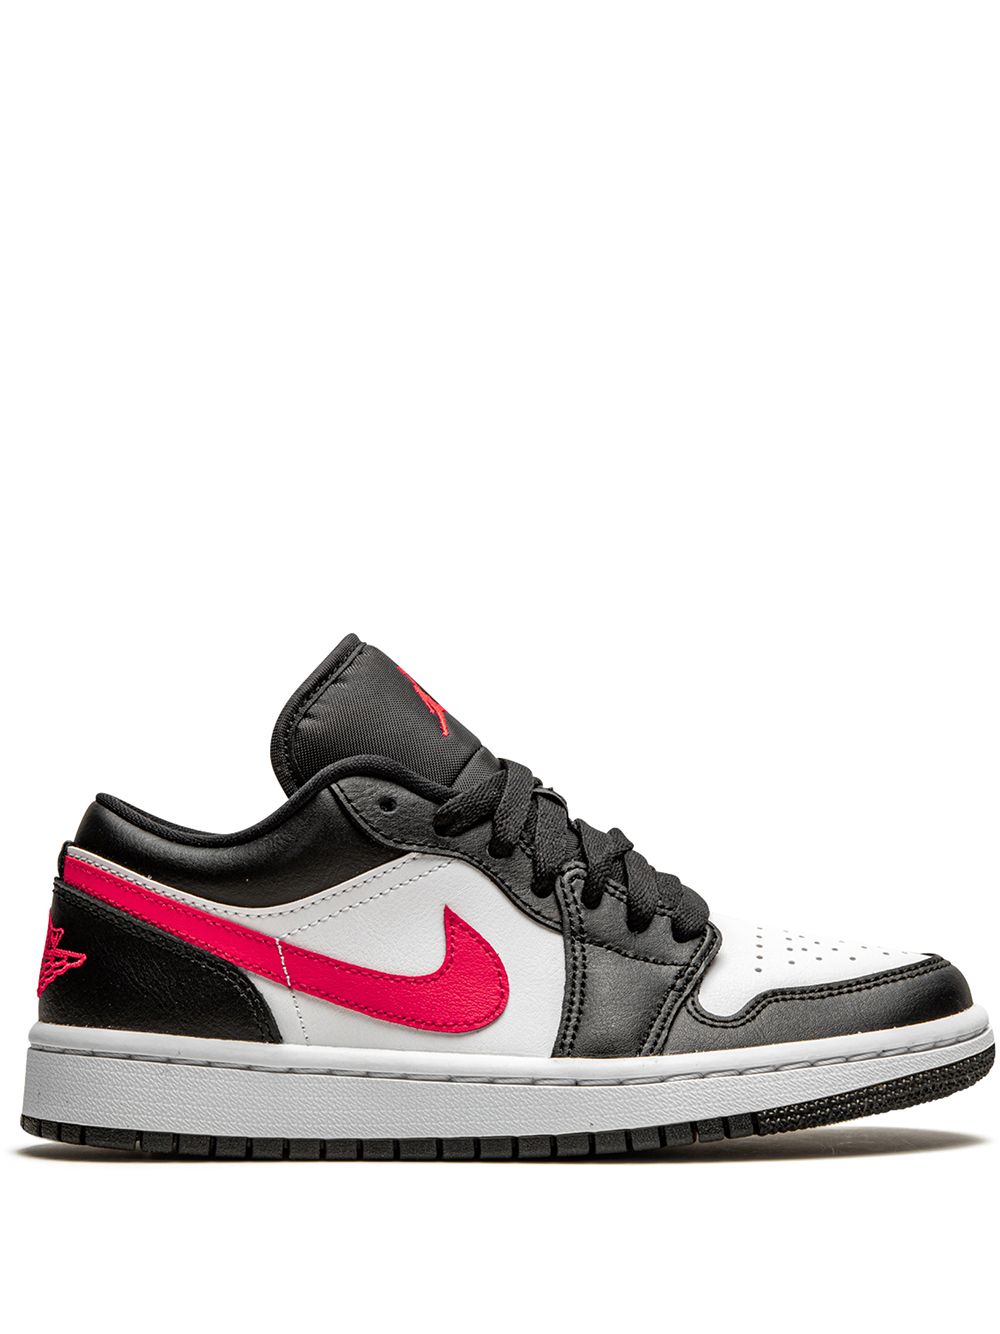 Jordan Air Jordan 1 Low "Siren Red/Black/White" sneakers